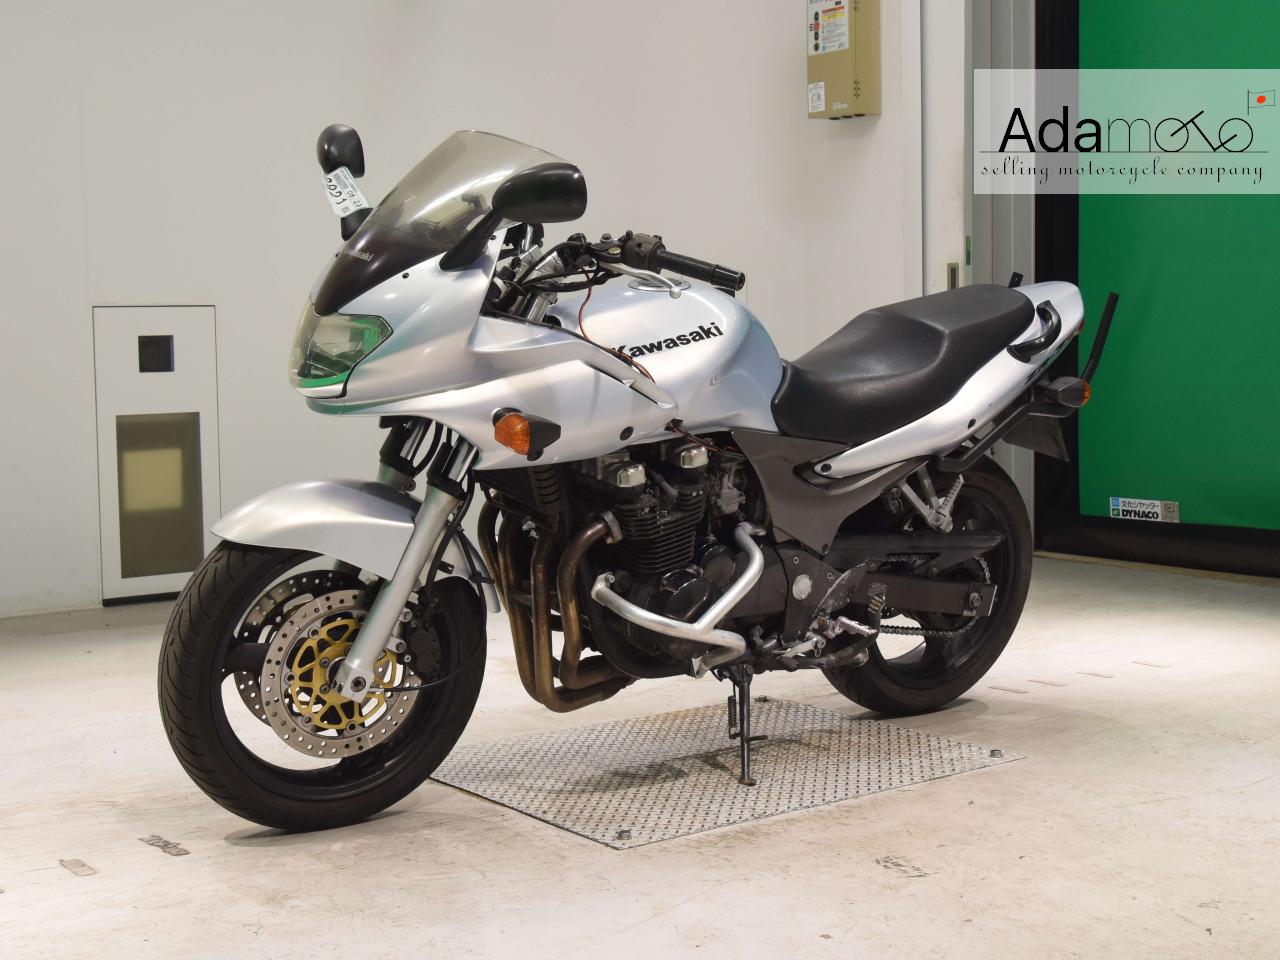 Kawasaki ZR 7S - Adamoto - Motorcycles from Japan